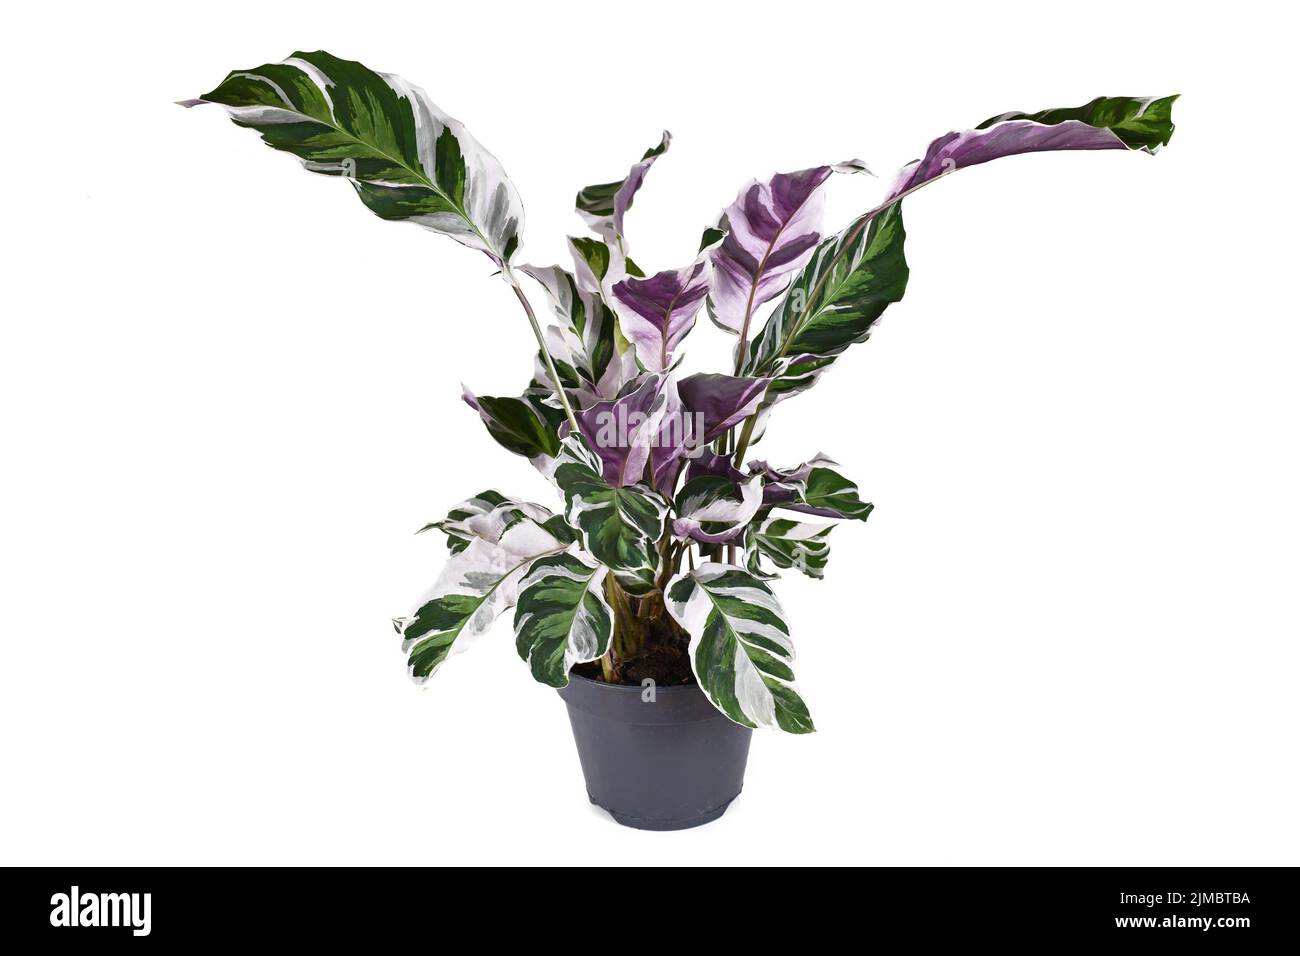 Exotic 'Calathea White Fusion' Prayer Plant houseplant in flower pot on white background Stock Photo